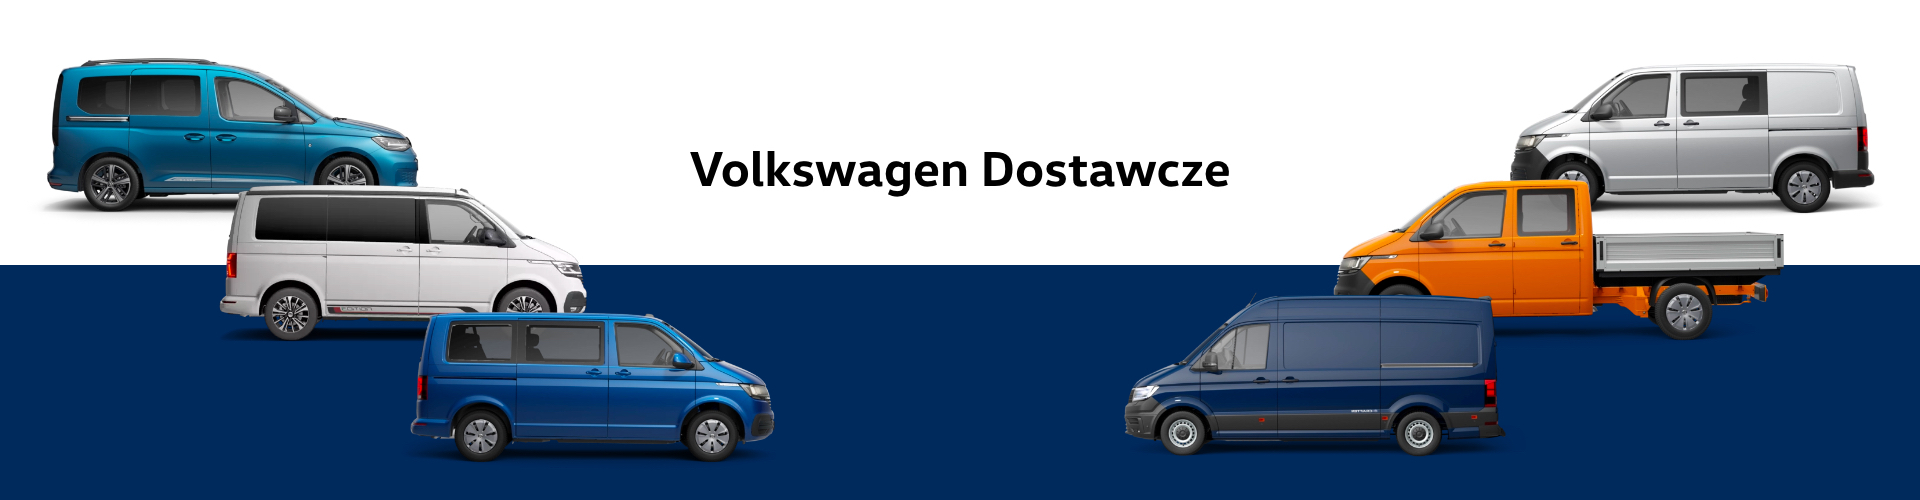 Volkswagen dostawcze